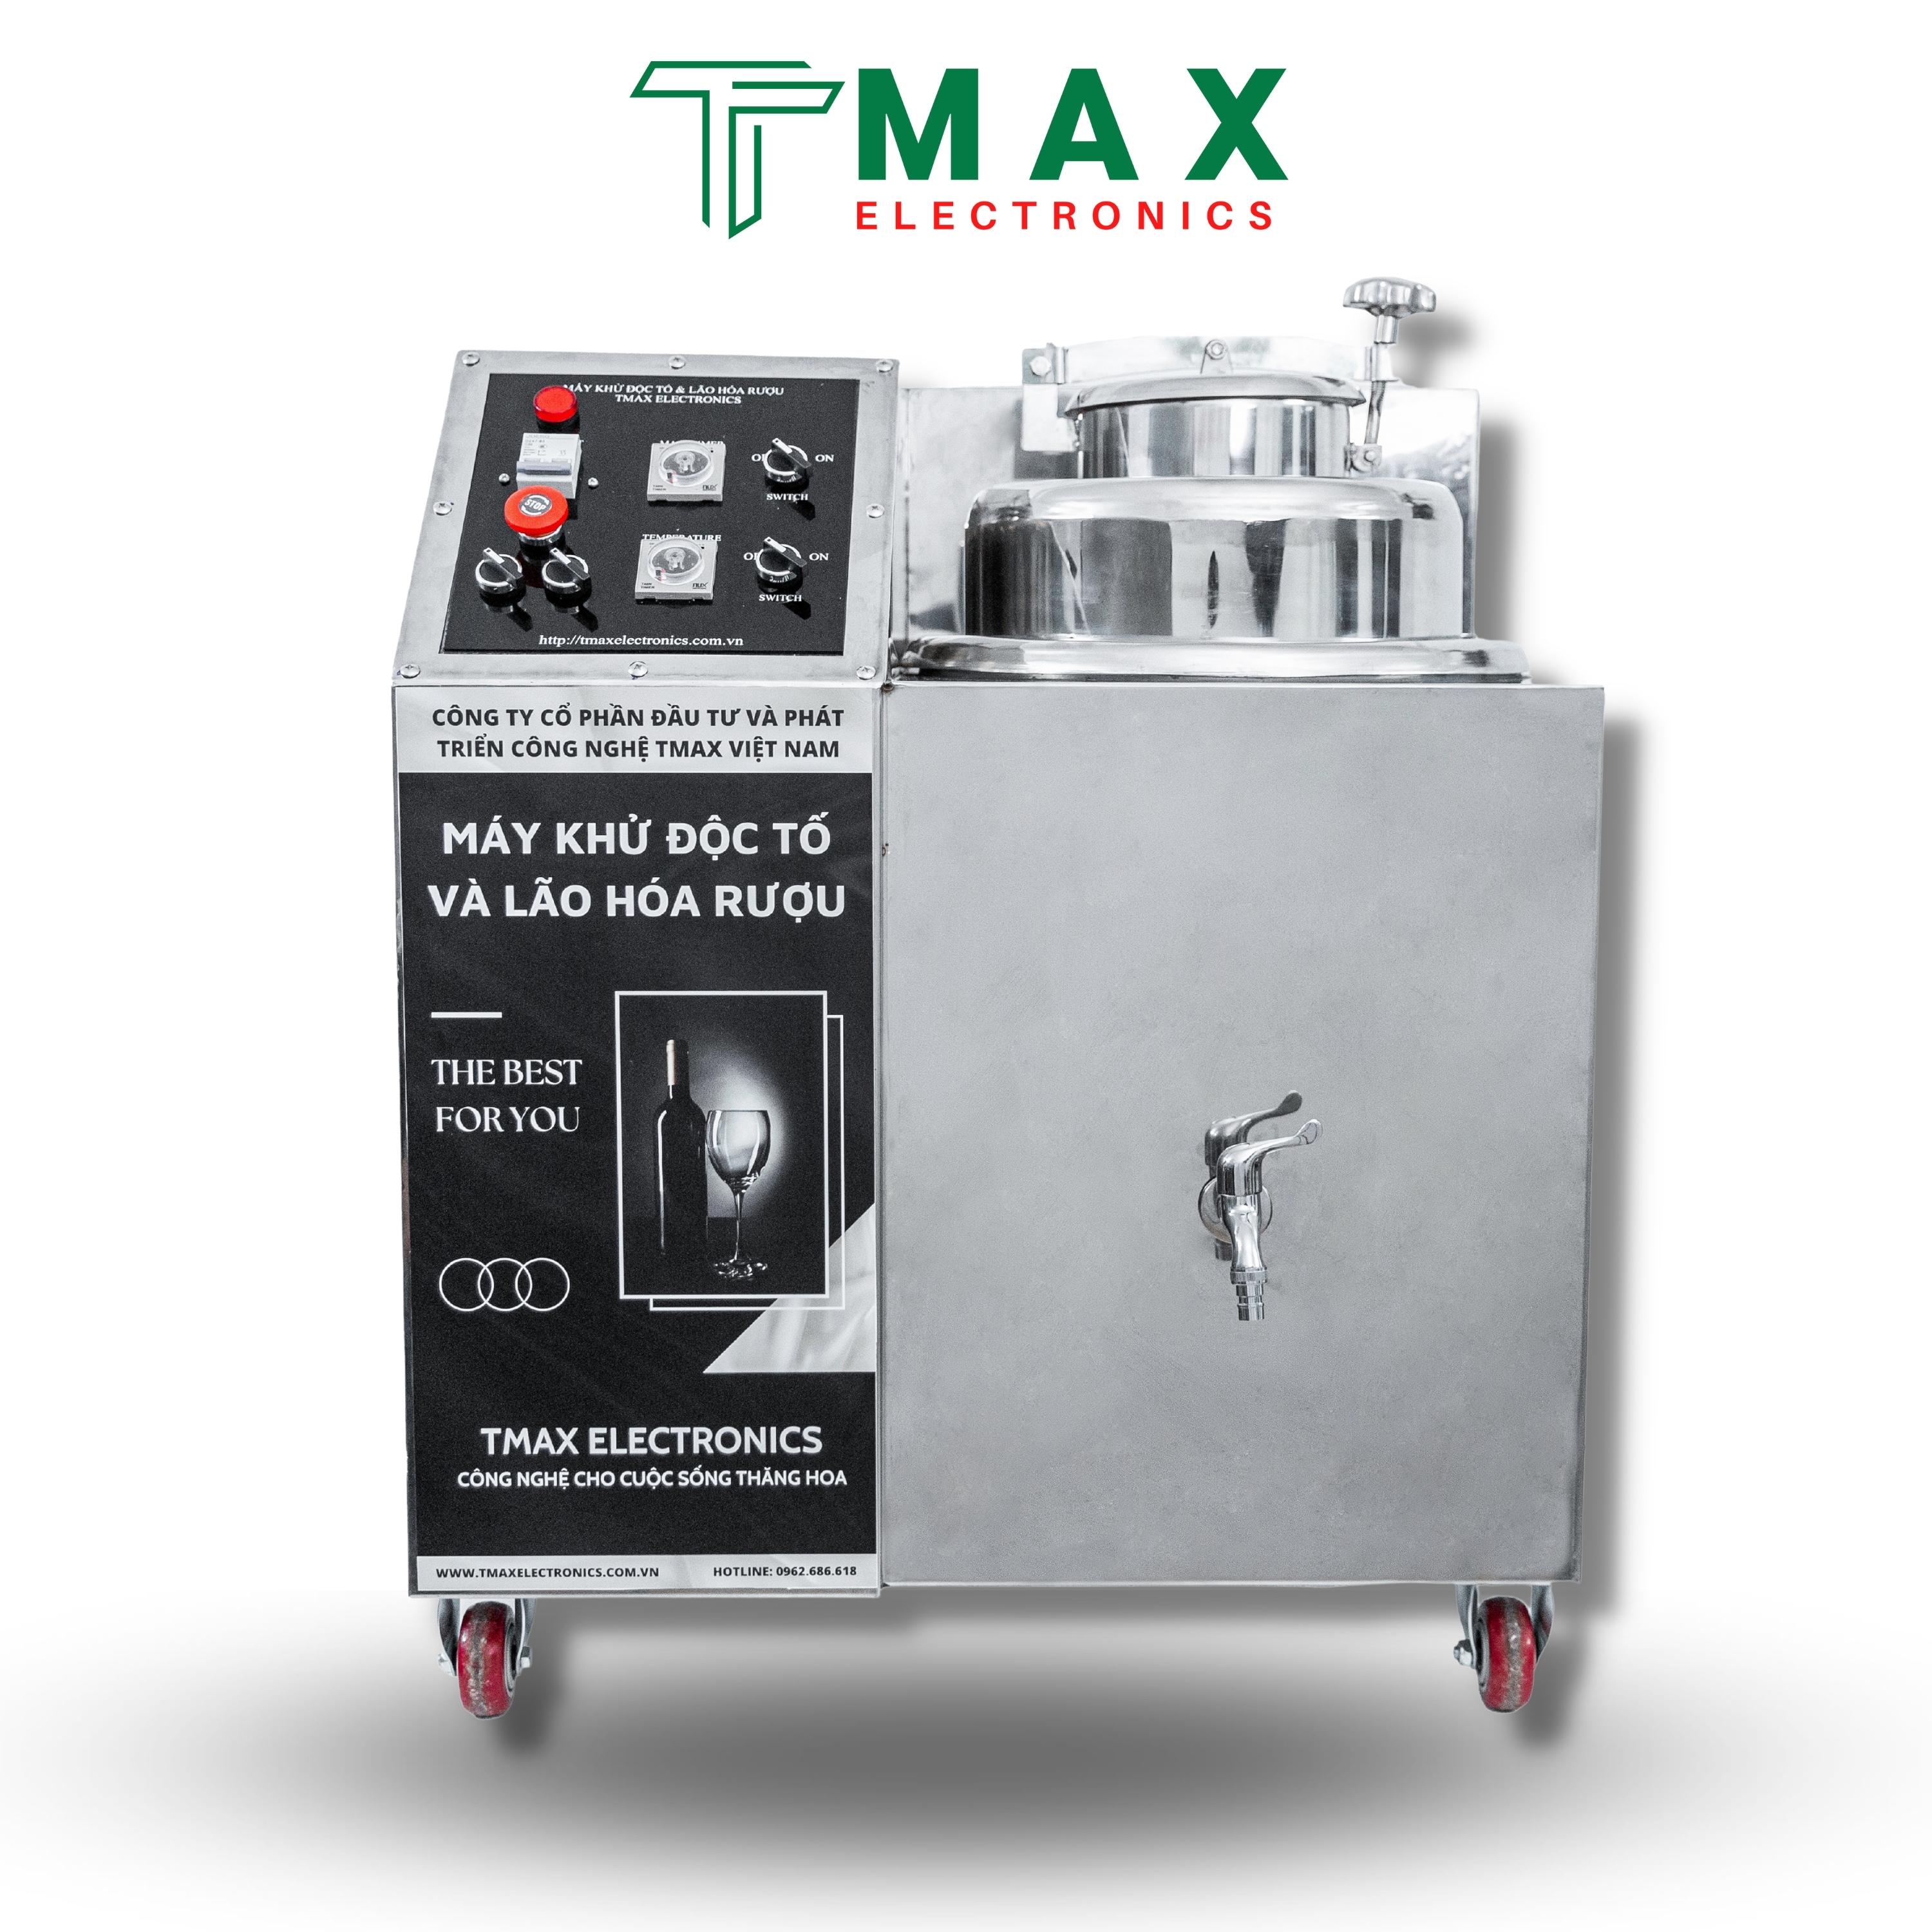 Máy Lão Hóa Rượu Tmax Electronics 35L